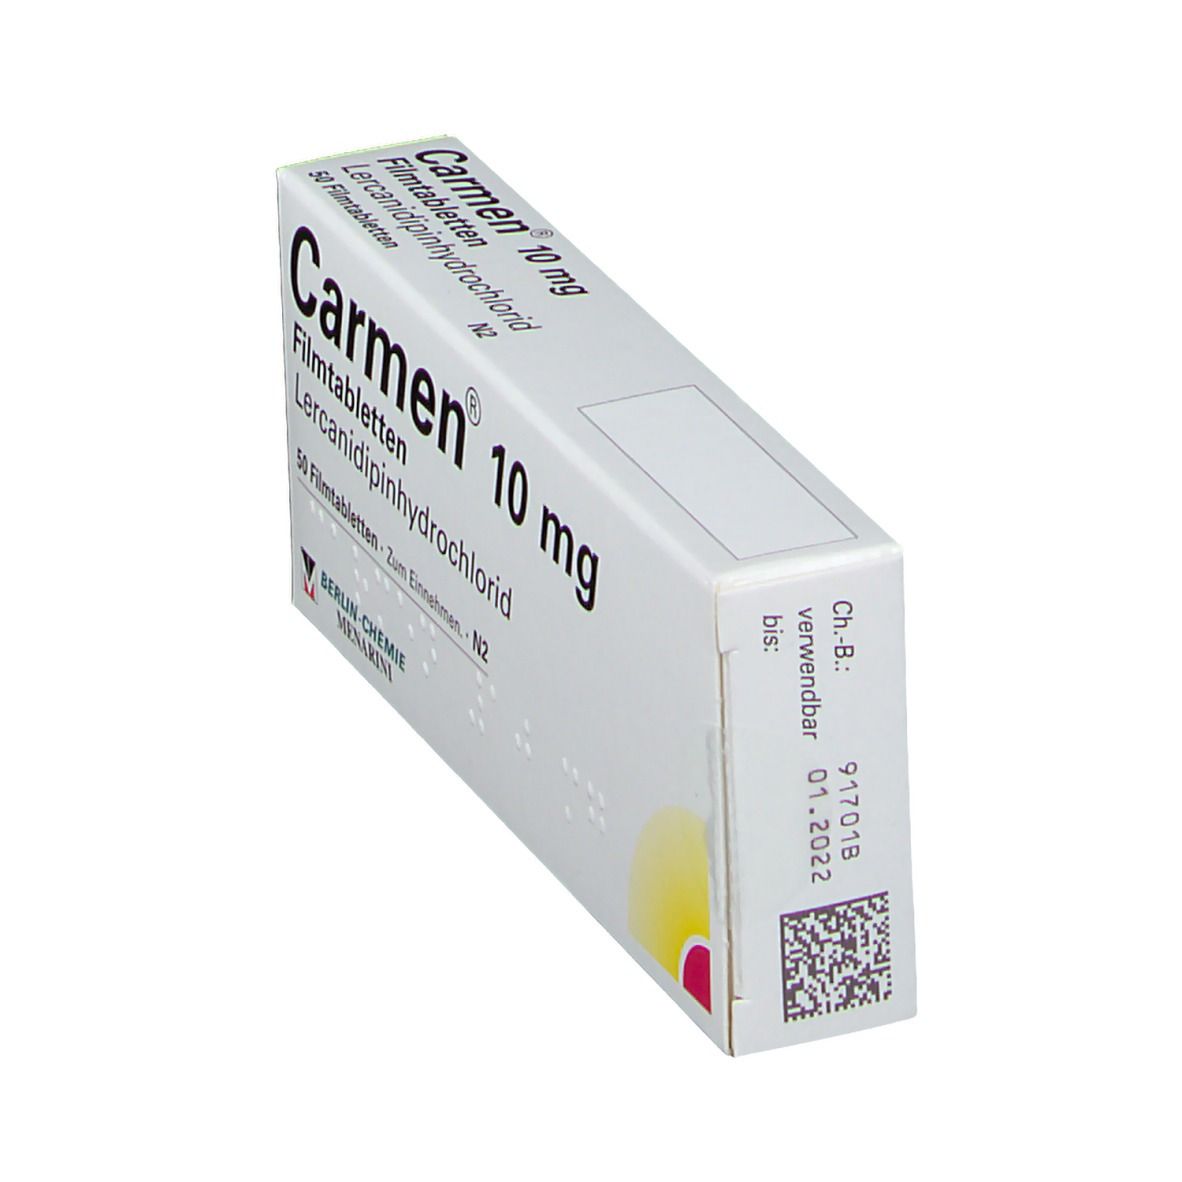 Carmen® 10 mg